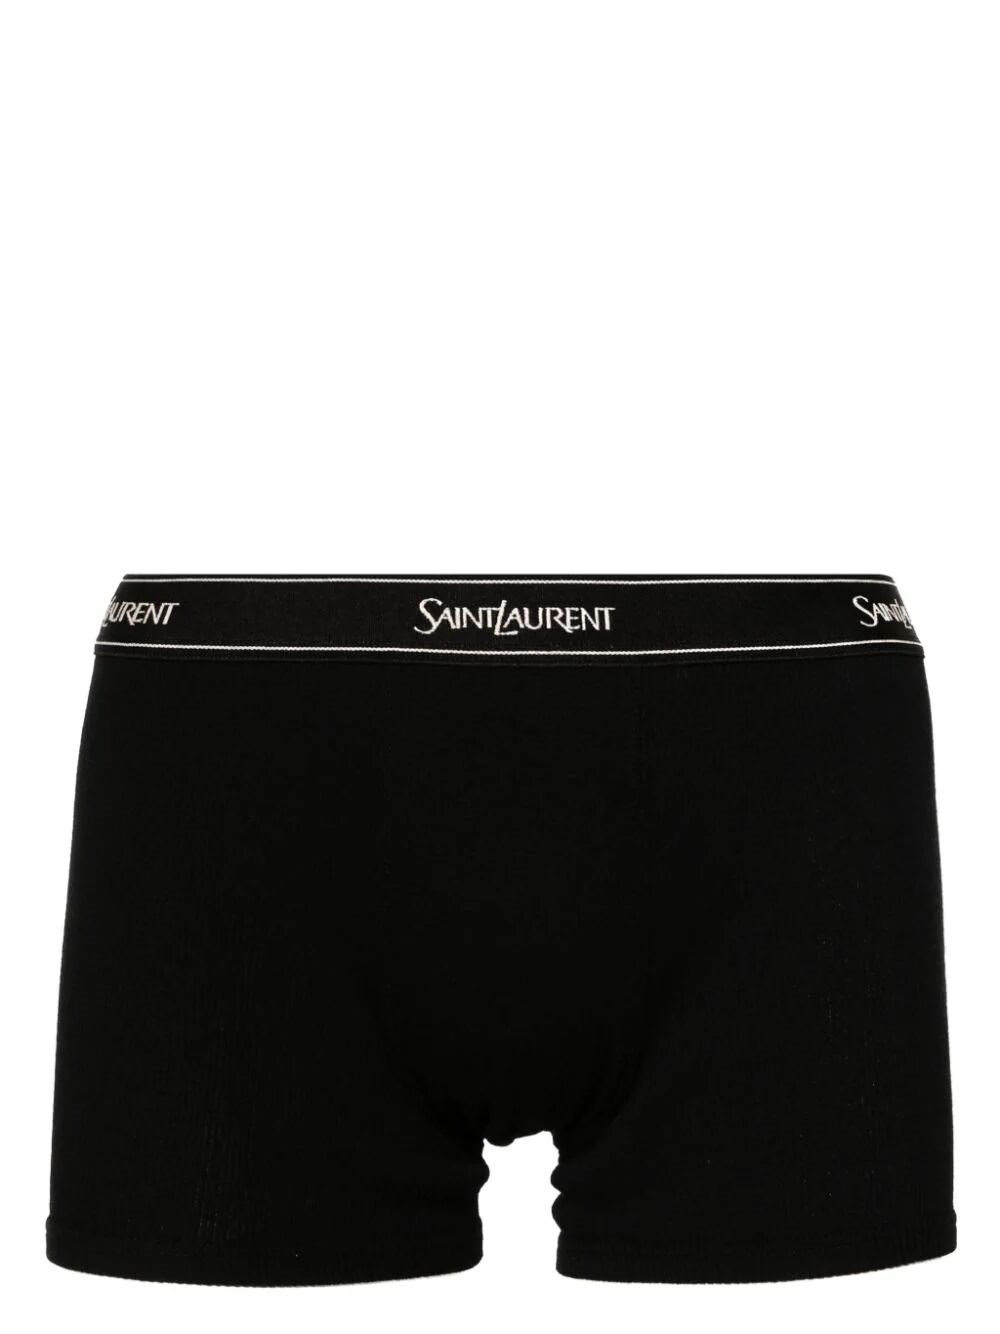 Saint Laurent Underwear In Black